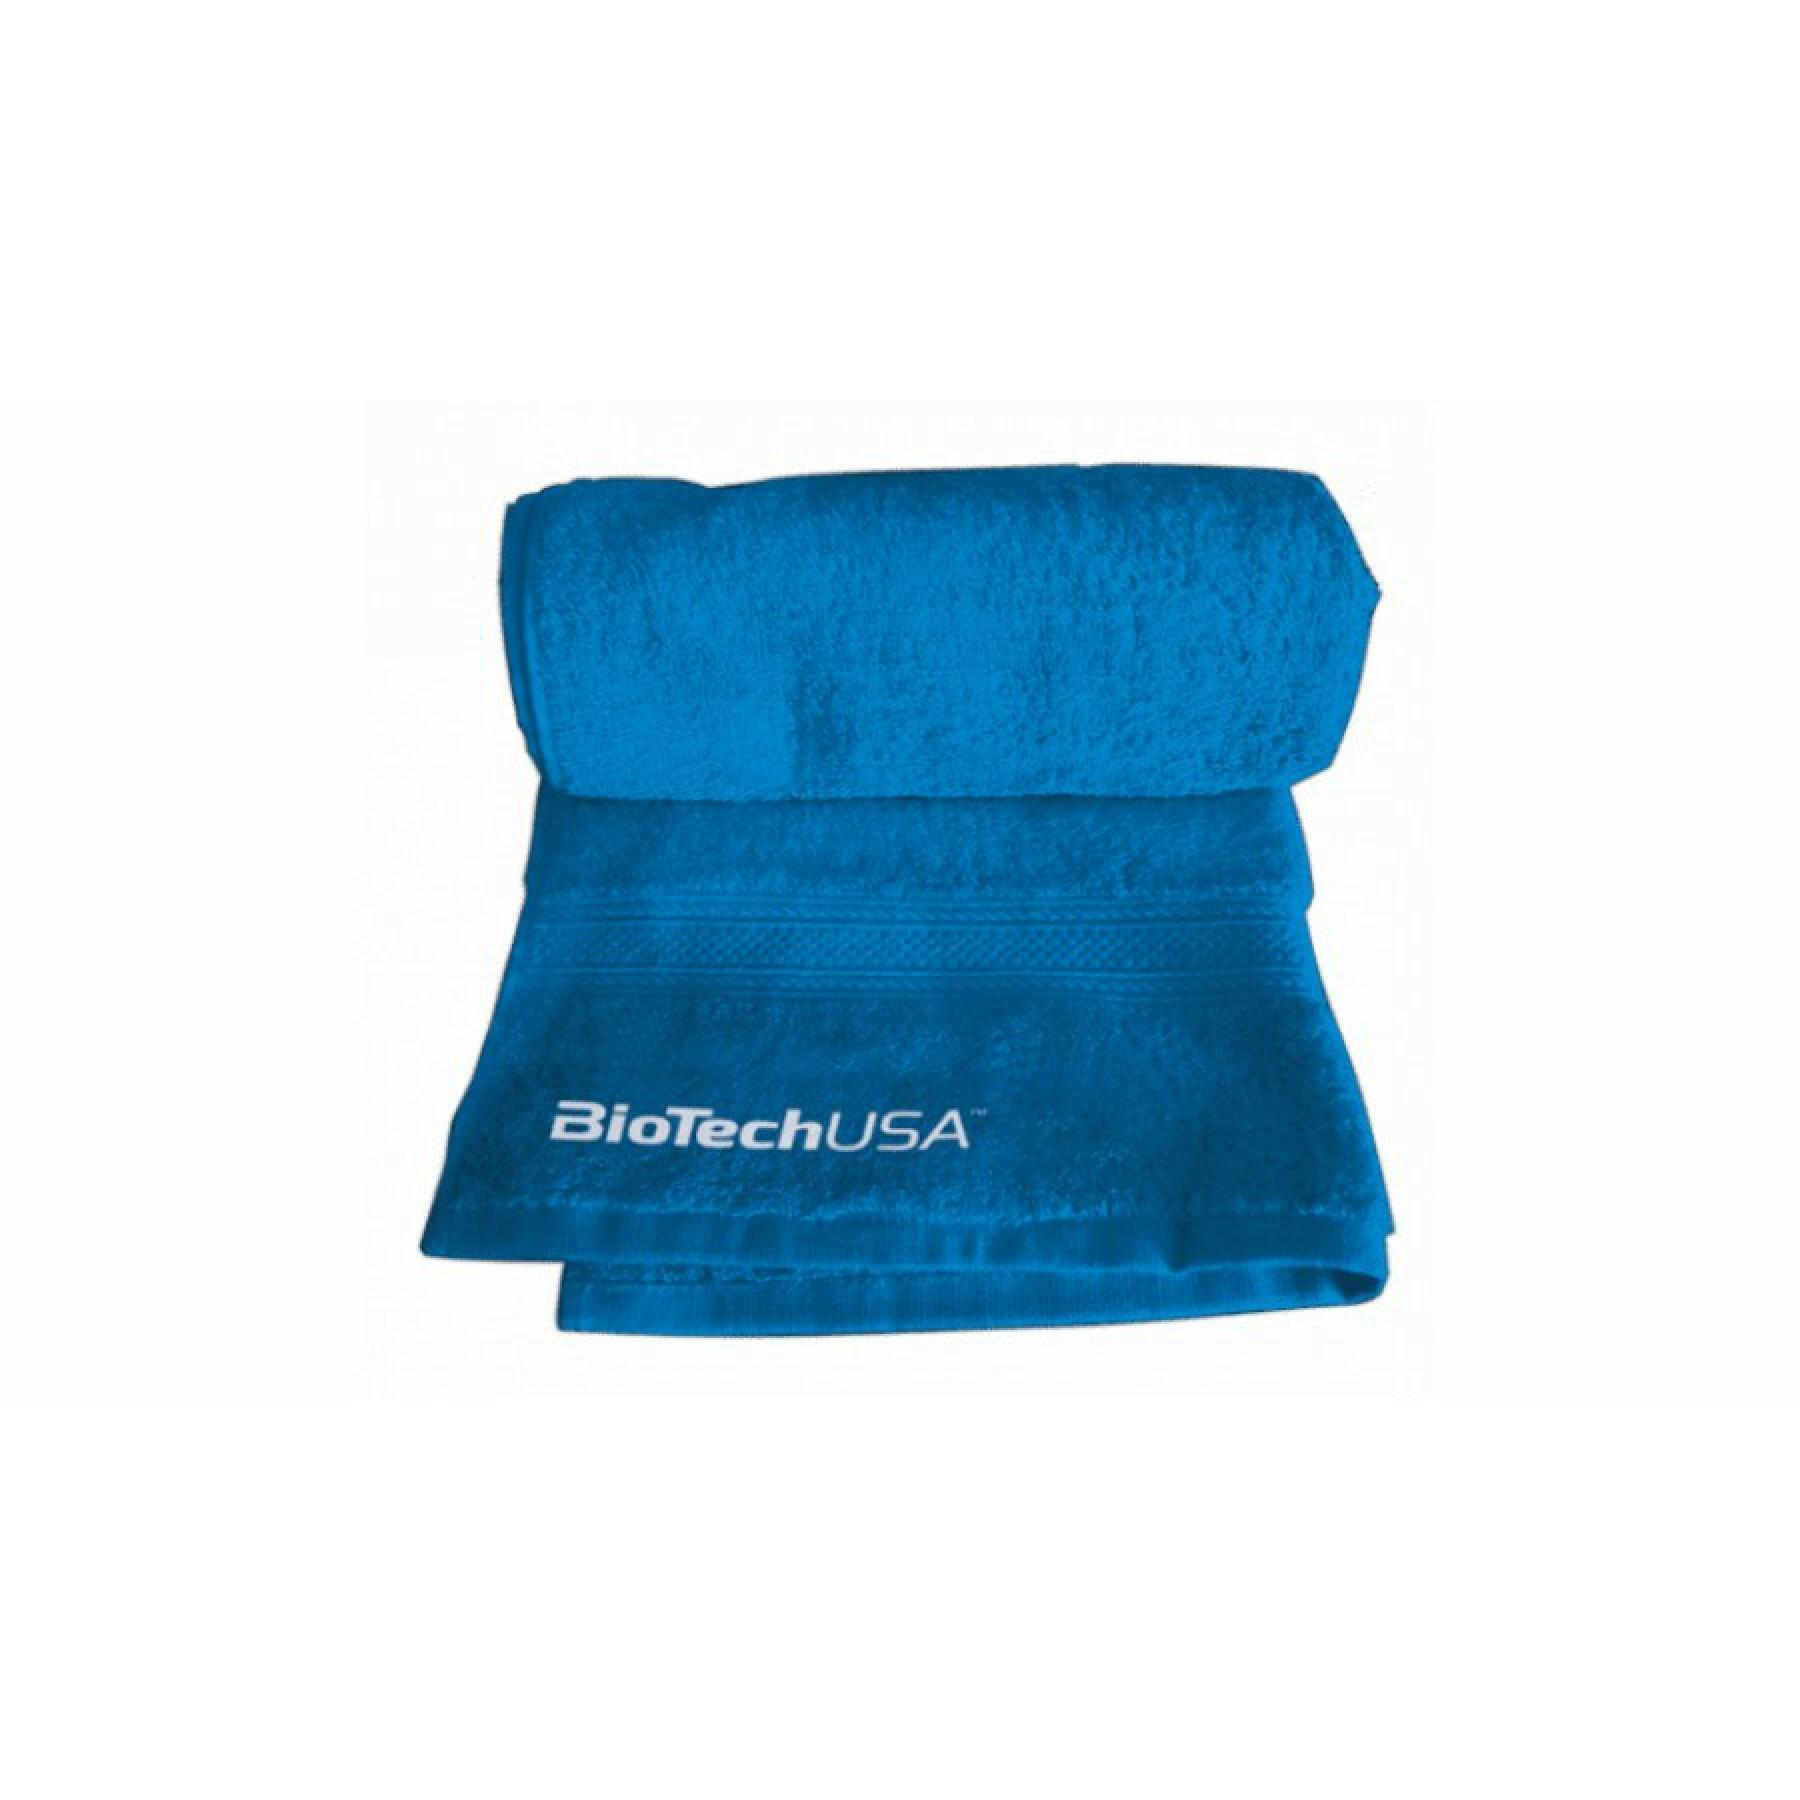 Toalha Biotech USA towel